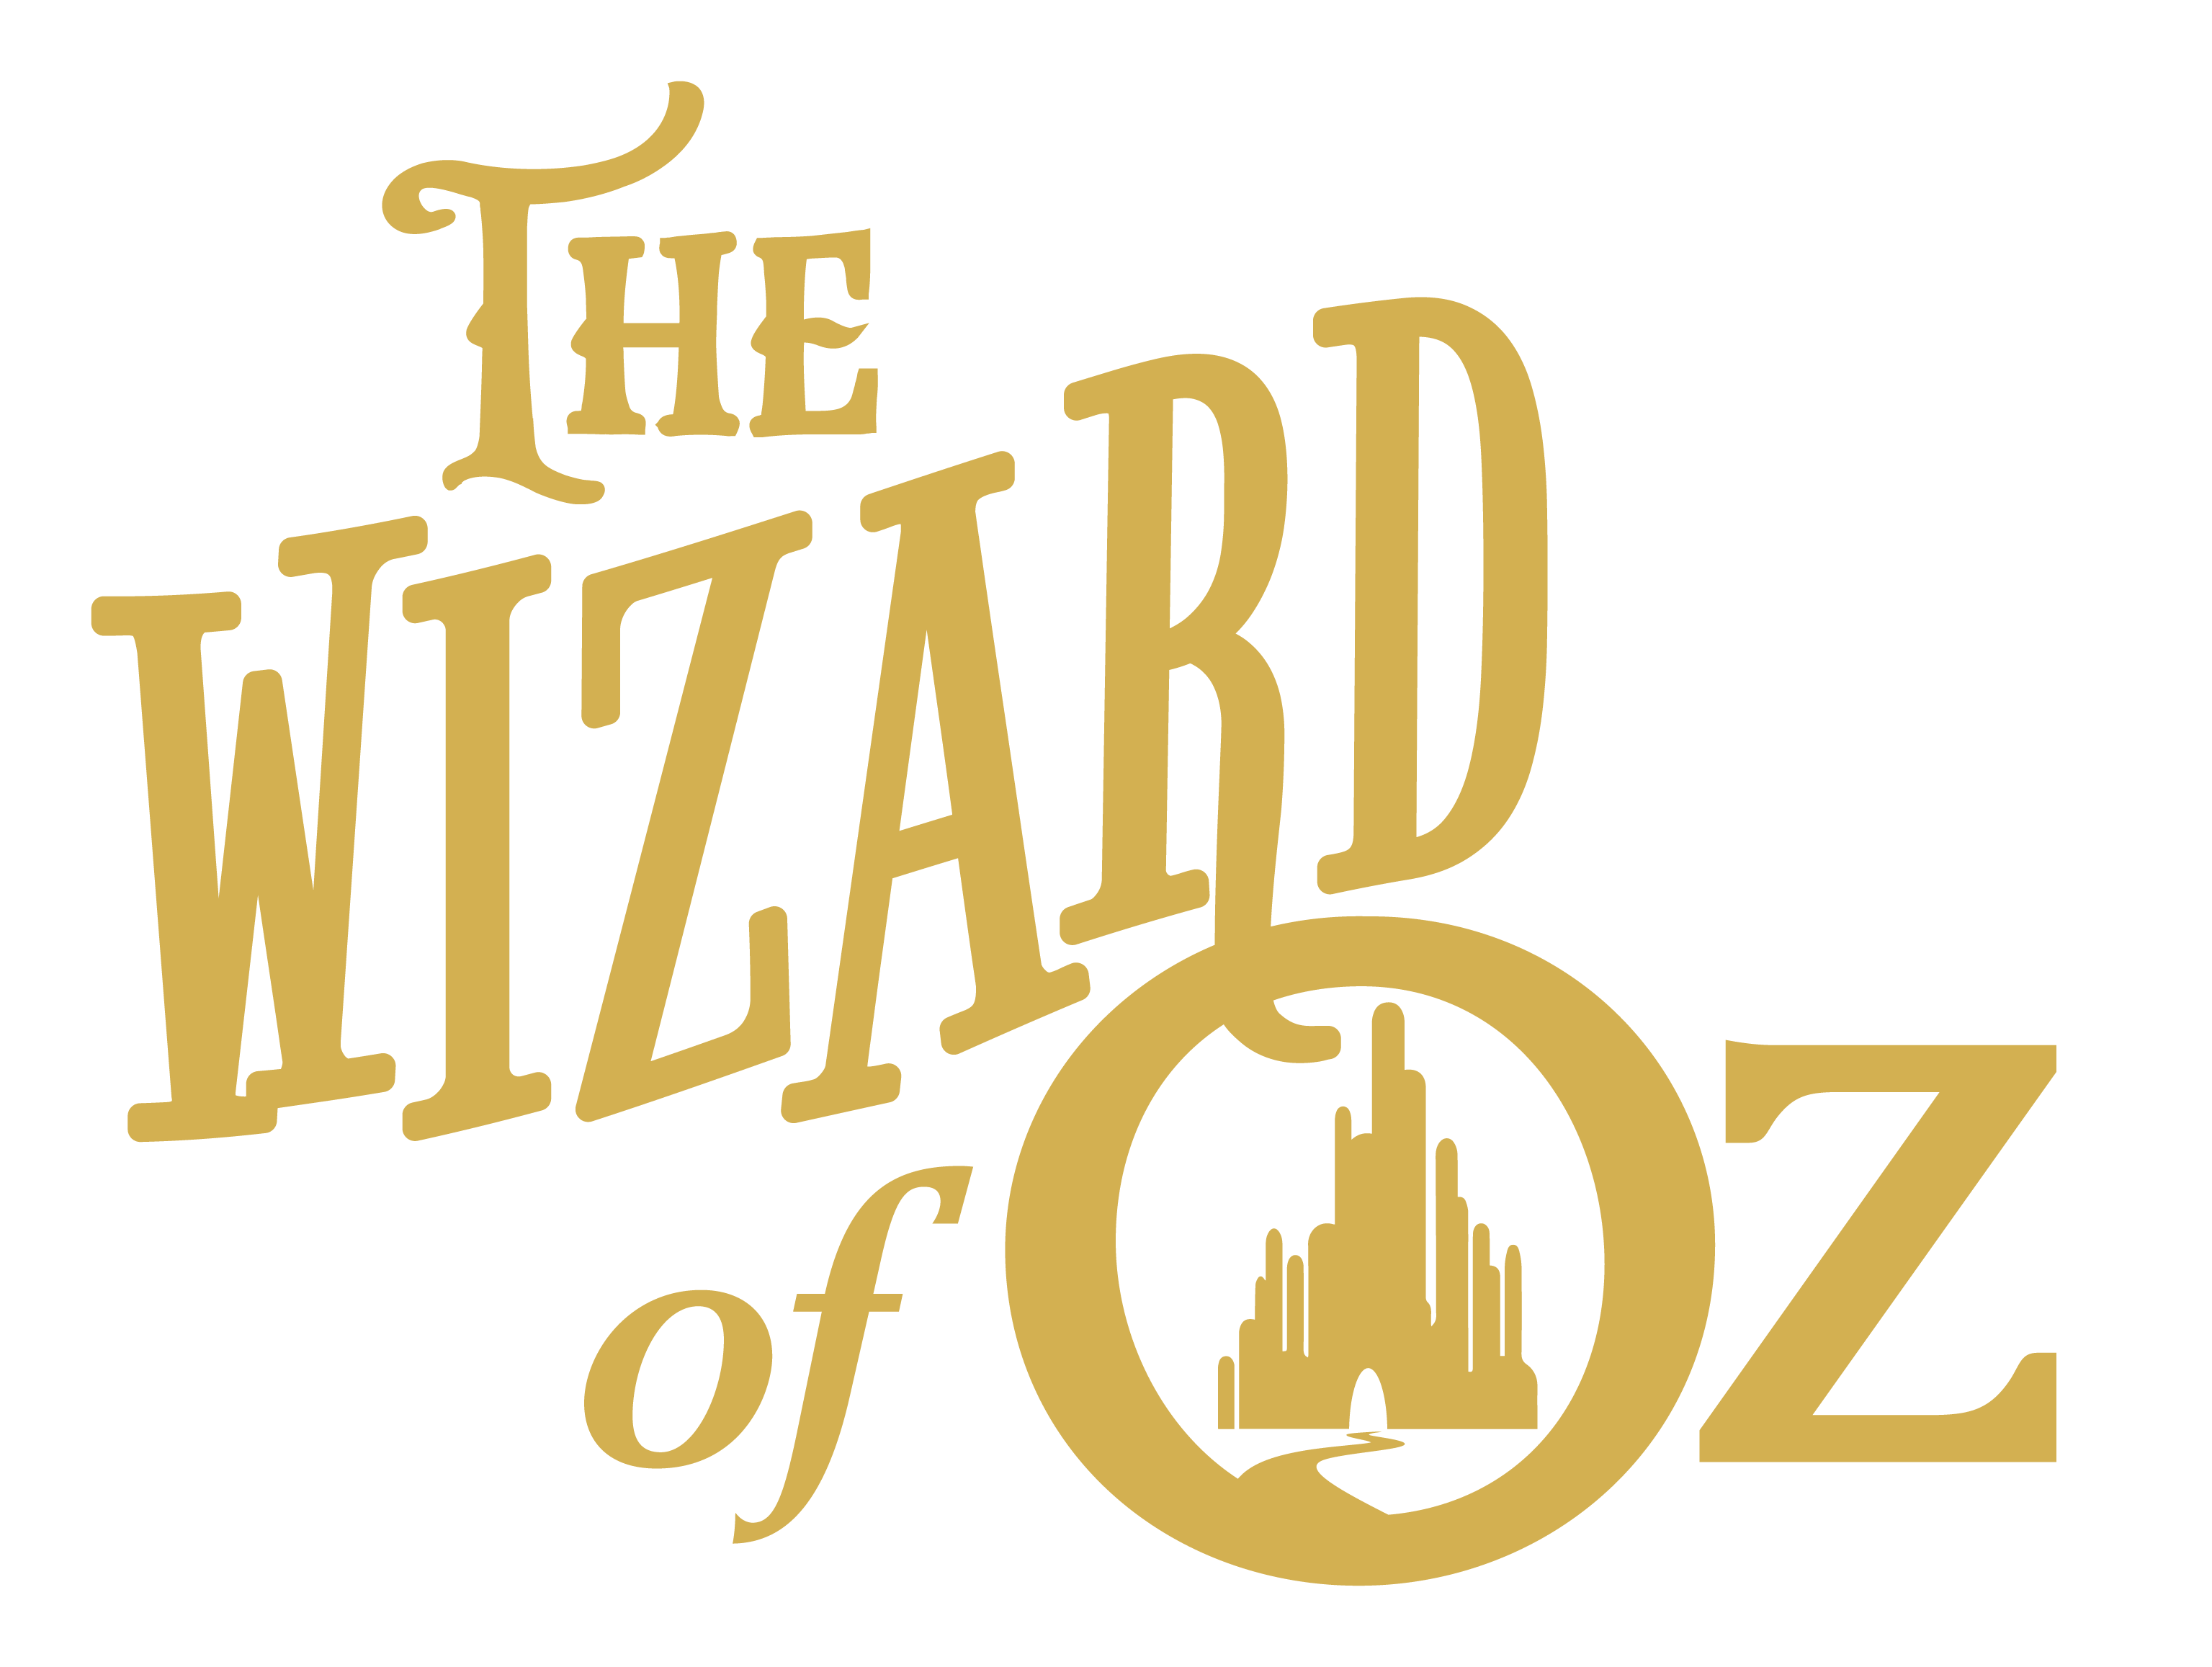 wizard of oz musical logo